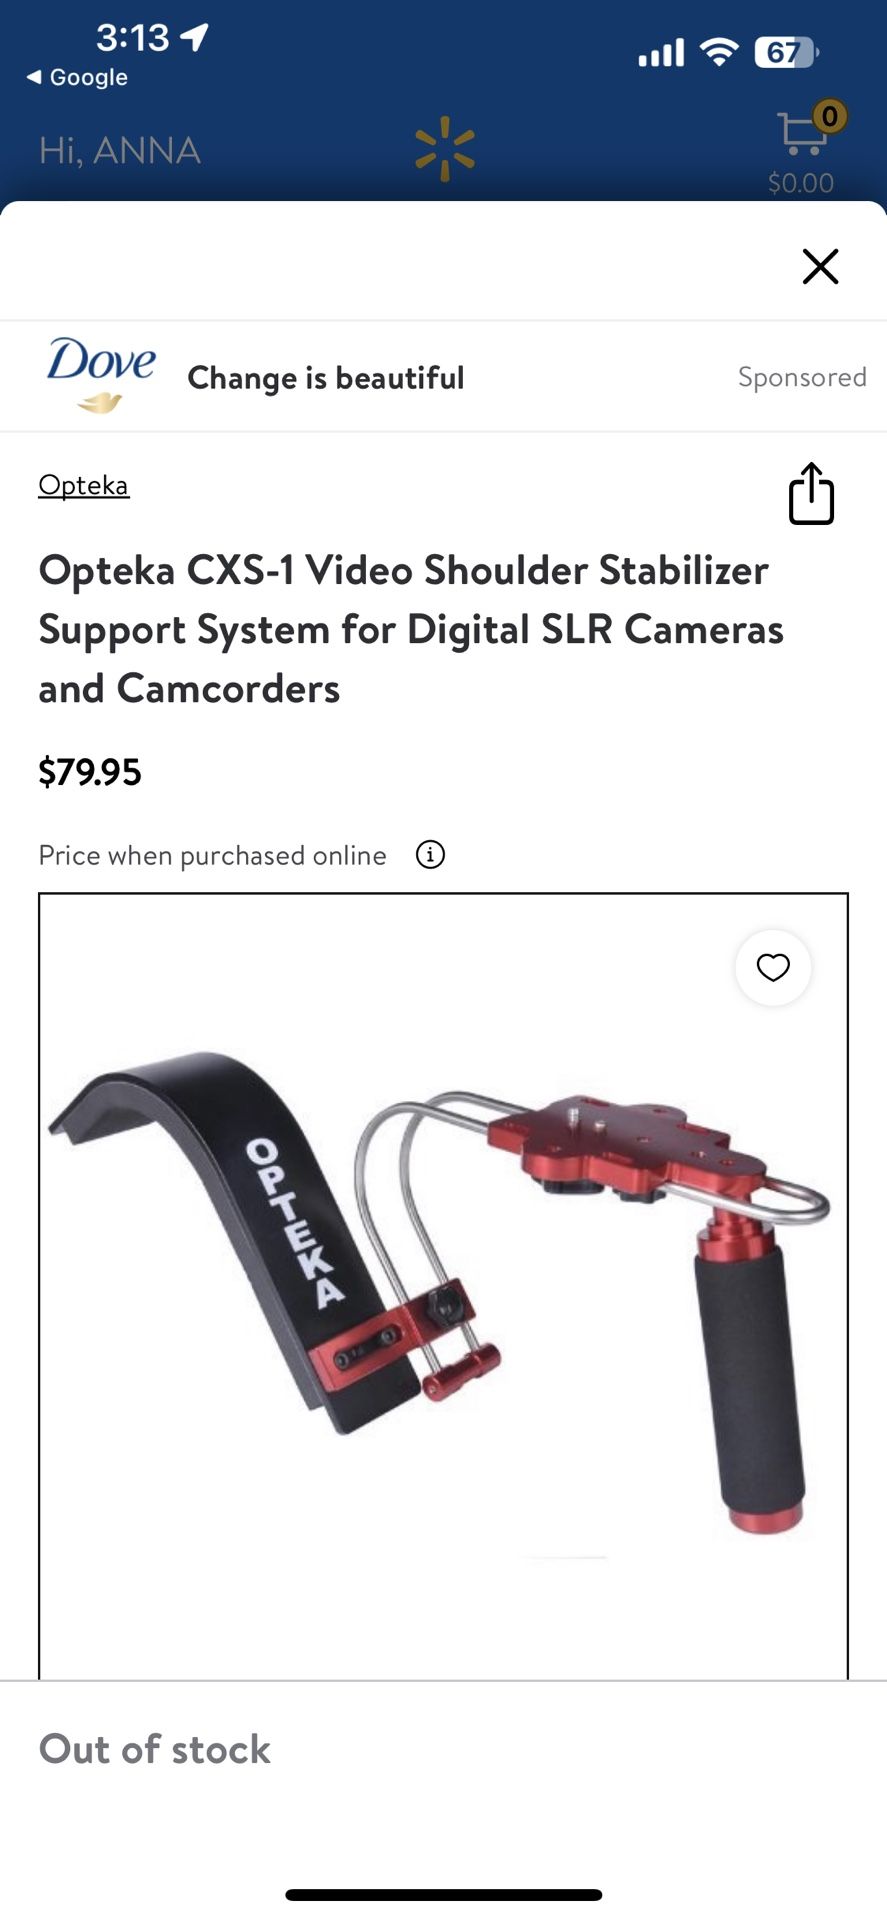 Video Shoulder Stabilizer Support System for Digital SLR Cameras and Camcorders